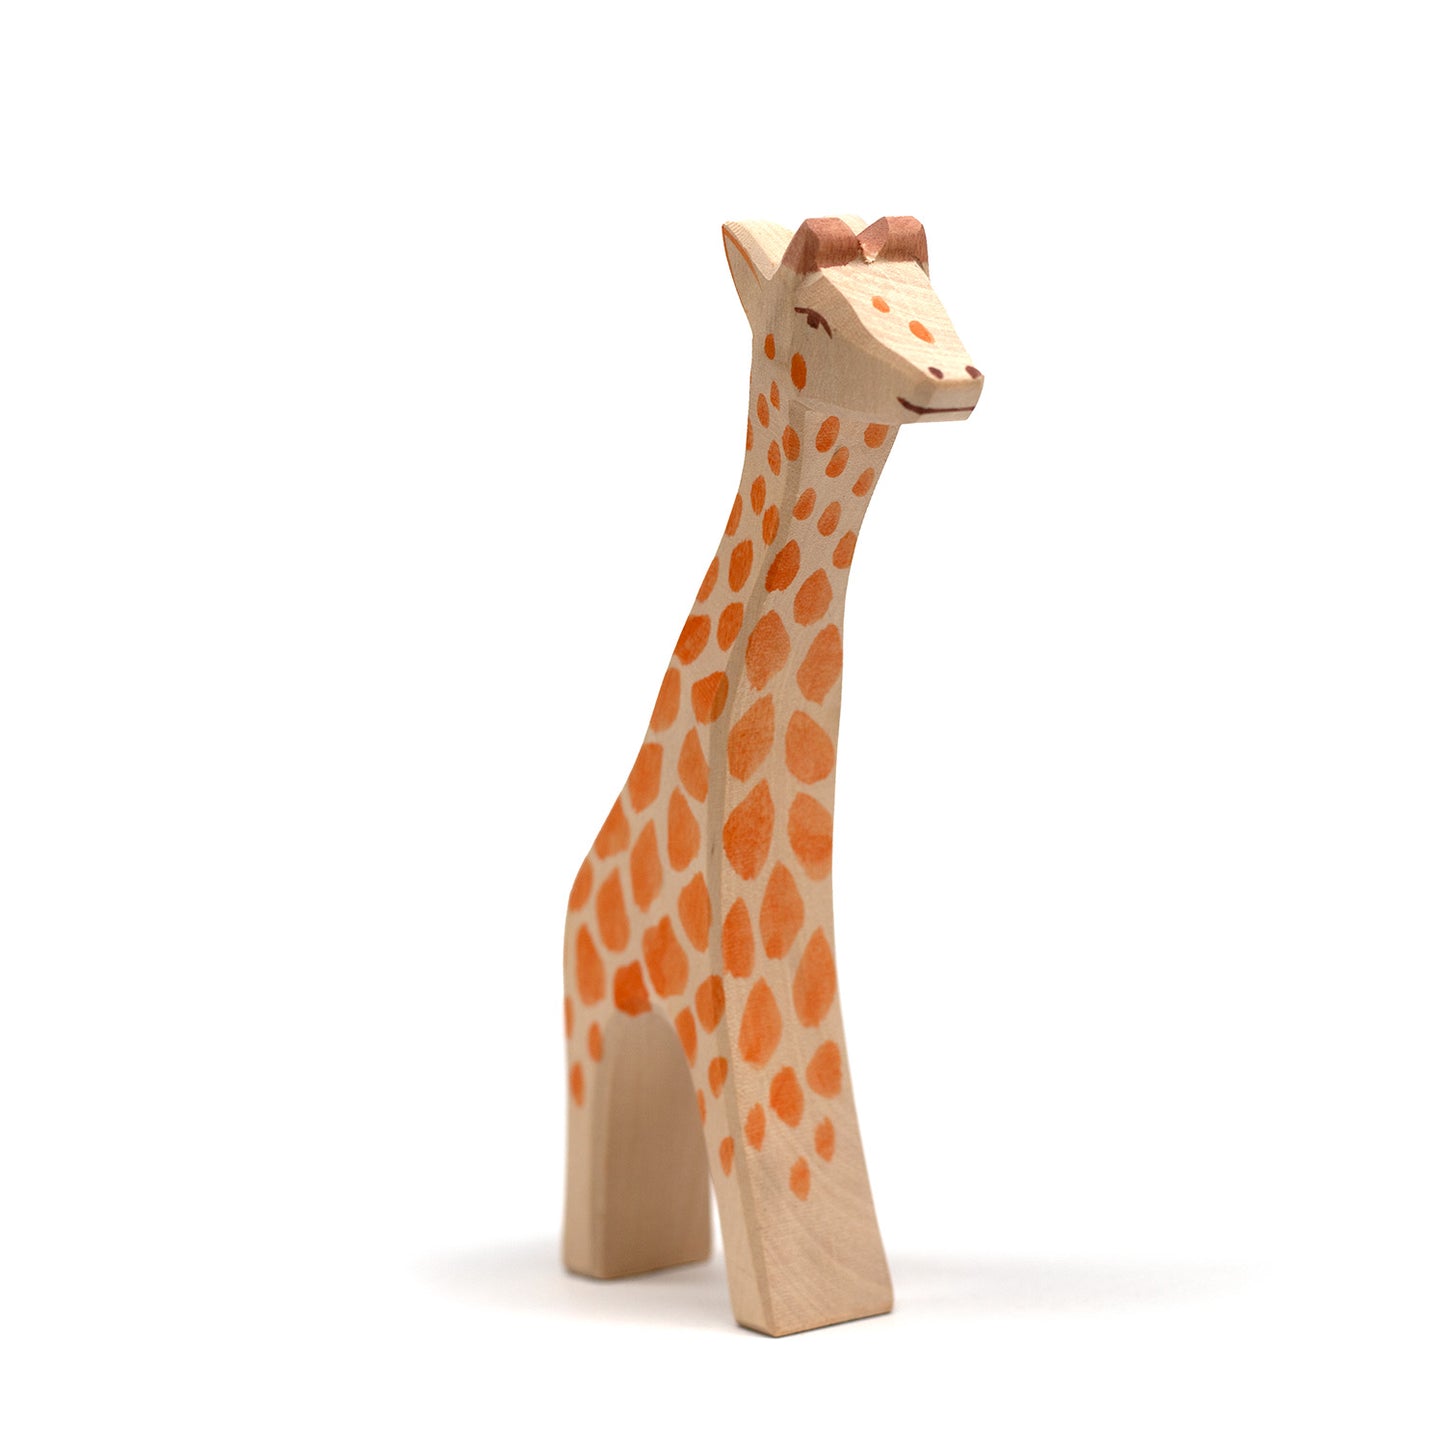 Houten speelgoed dieren - Giraffe - Montessori - Open einde speelgoed - Lille Barn - With ♥ for the smallest